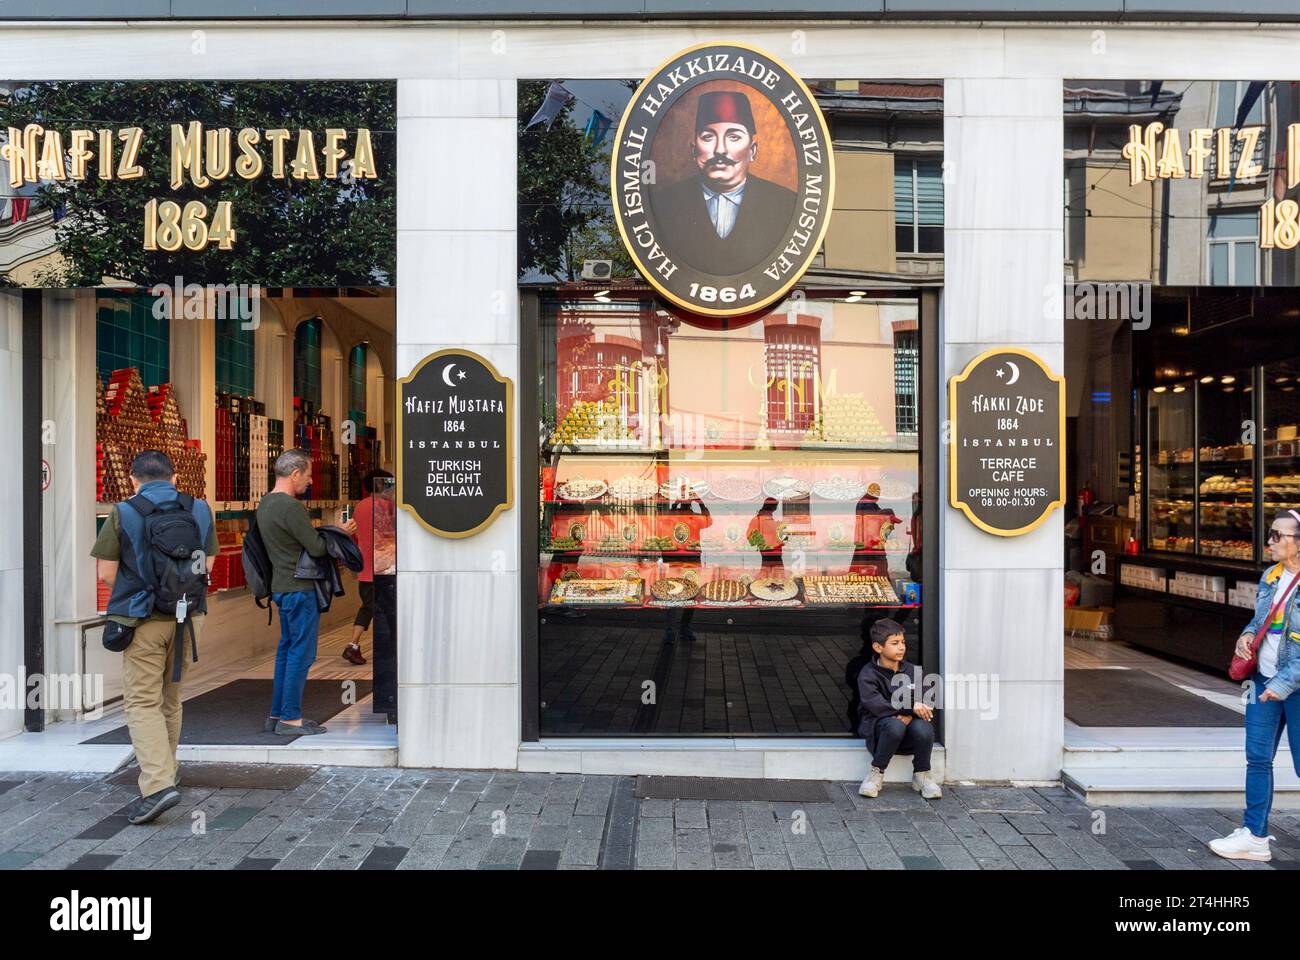 Istanbul, Turquie, Hafiz mustafa 1864 est un magasin qui vend toutes sortes de délices turcs, Editorial seulement. Banque D'Images